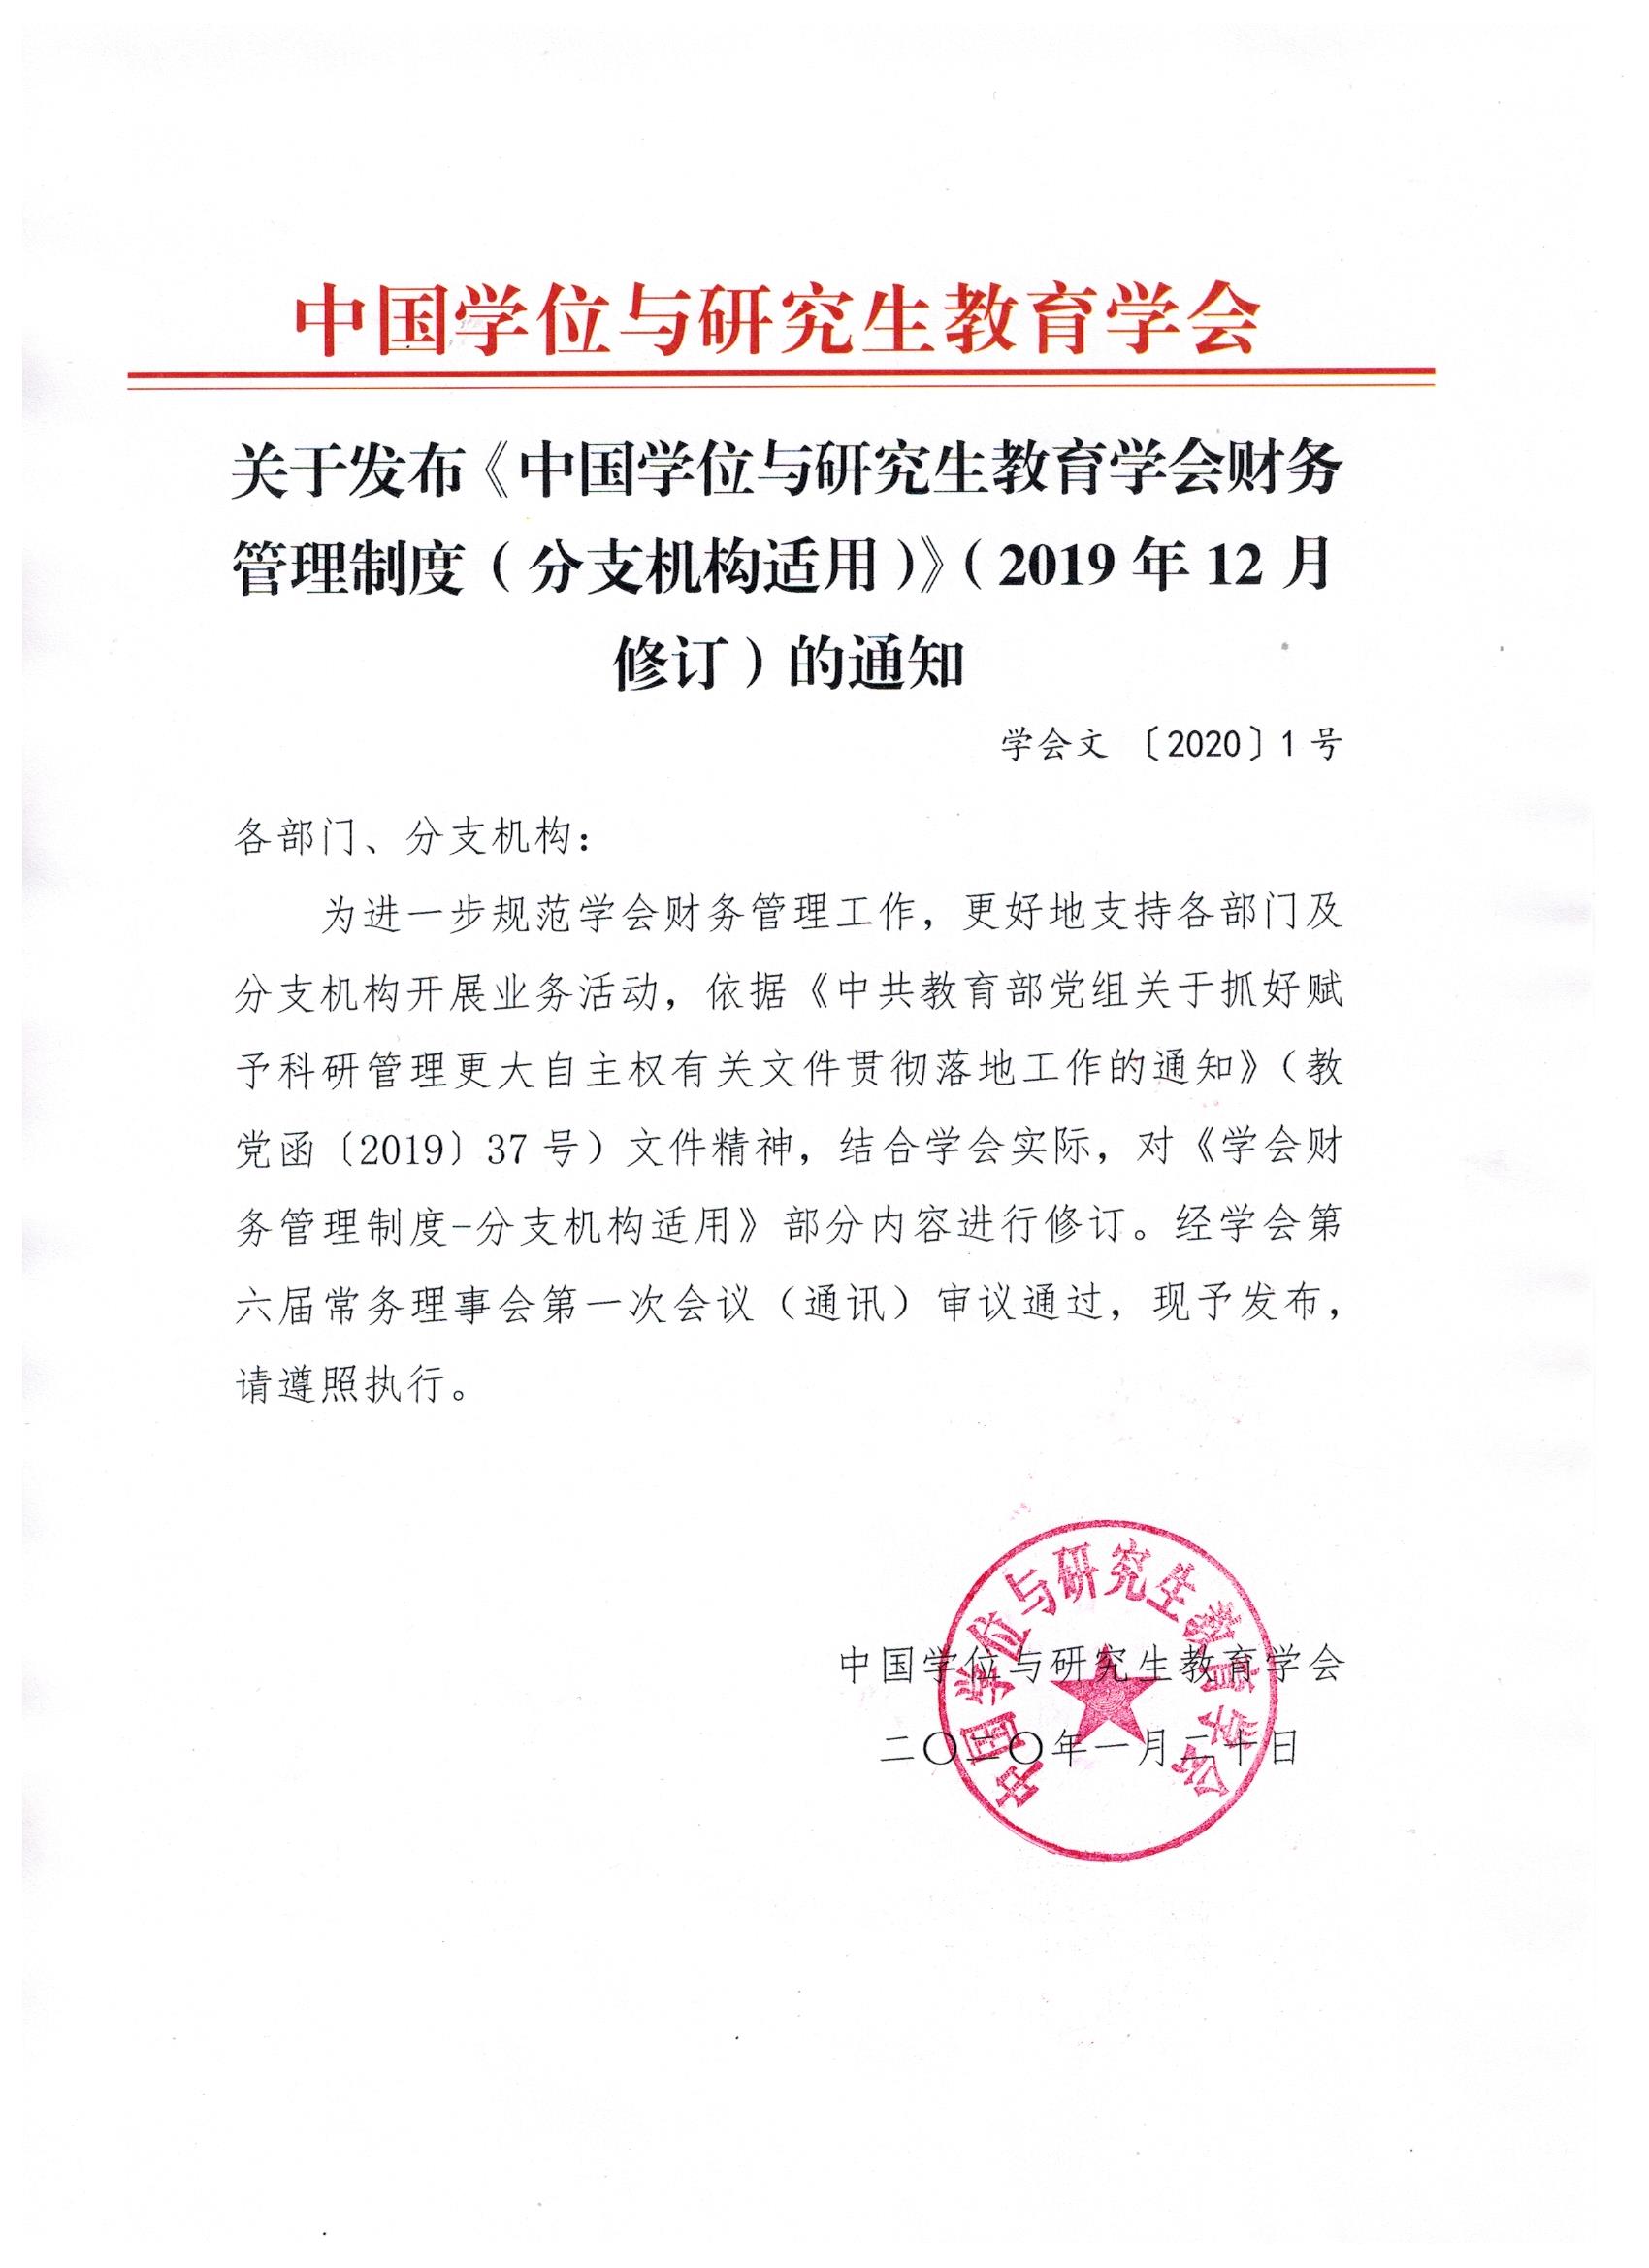 关于发布《中国学位与研究生教育学会财务管理制度（分支机构适用）》（2019年12月修订）的通知.jpeg